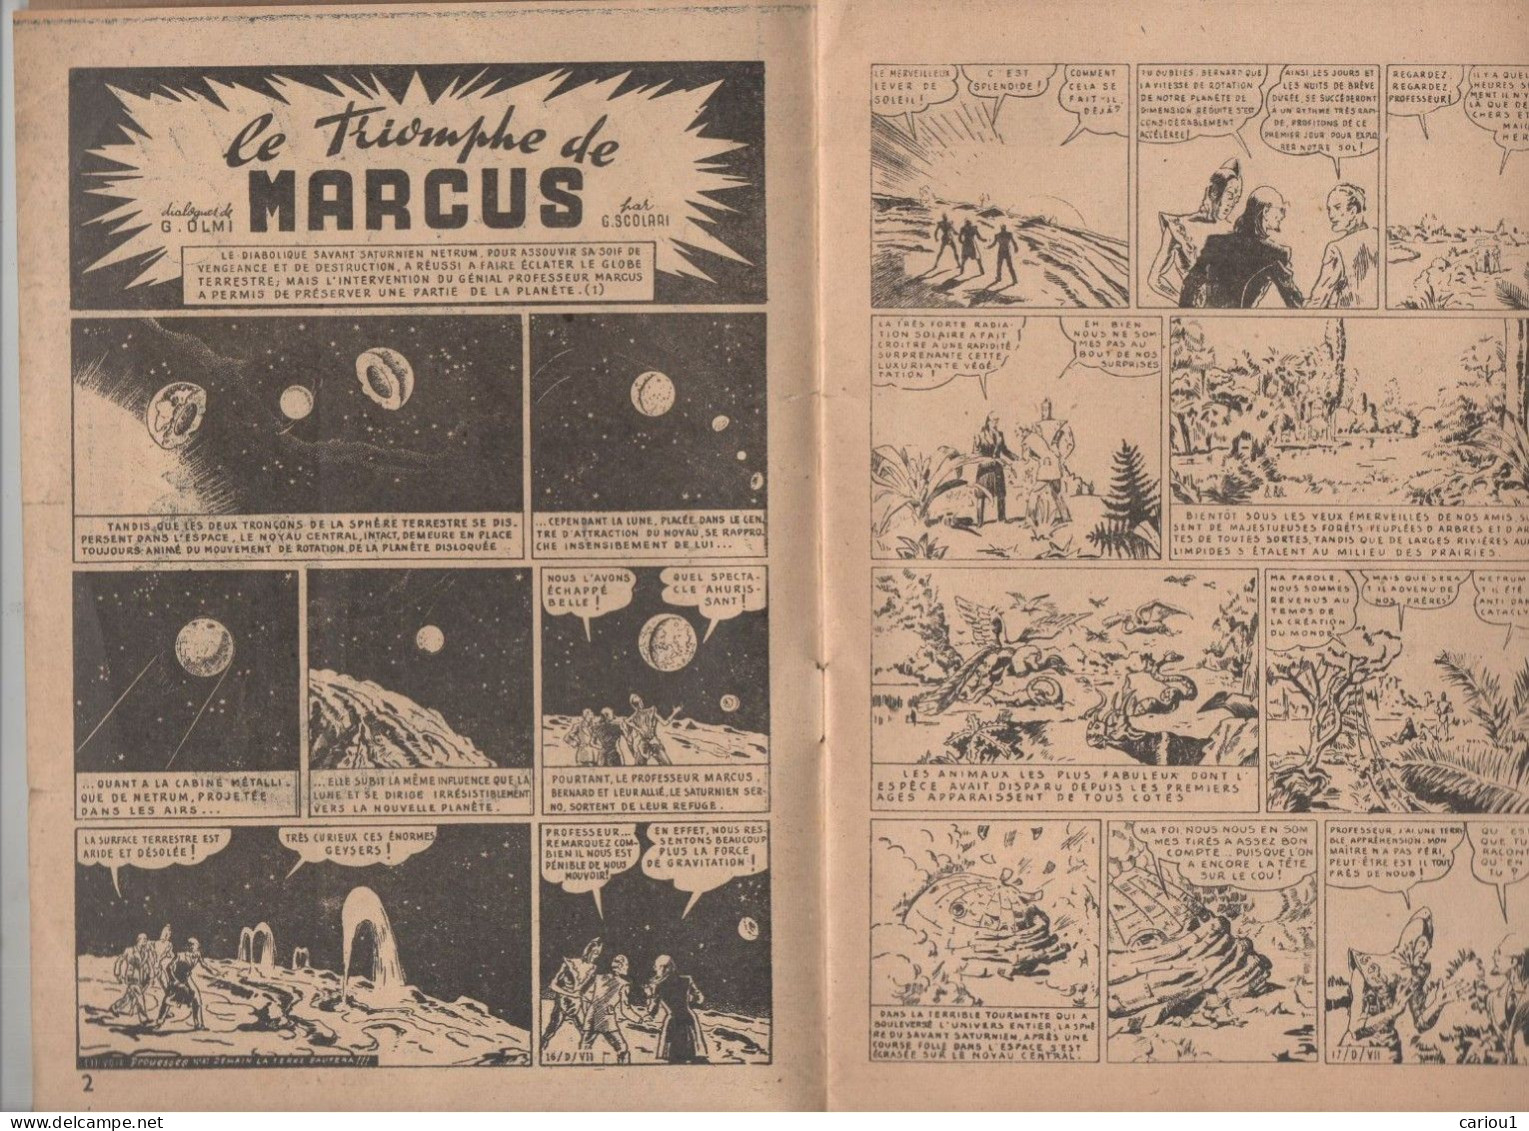 C1 SCOLARI Triomphe Marcus SELECTIONS PROUESSES # 2 1948 Saturne Contre Terre SF Port Inclus France - Vóór 1950